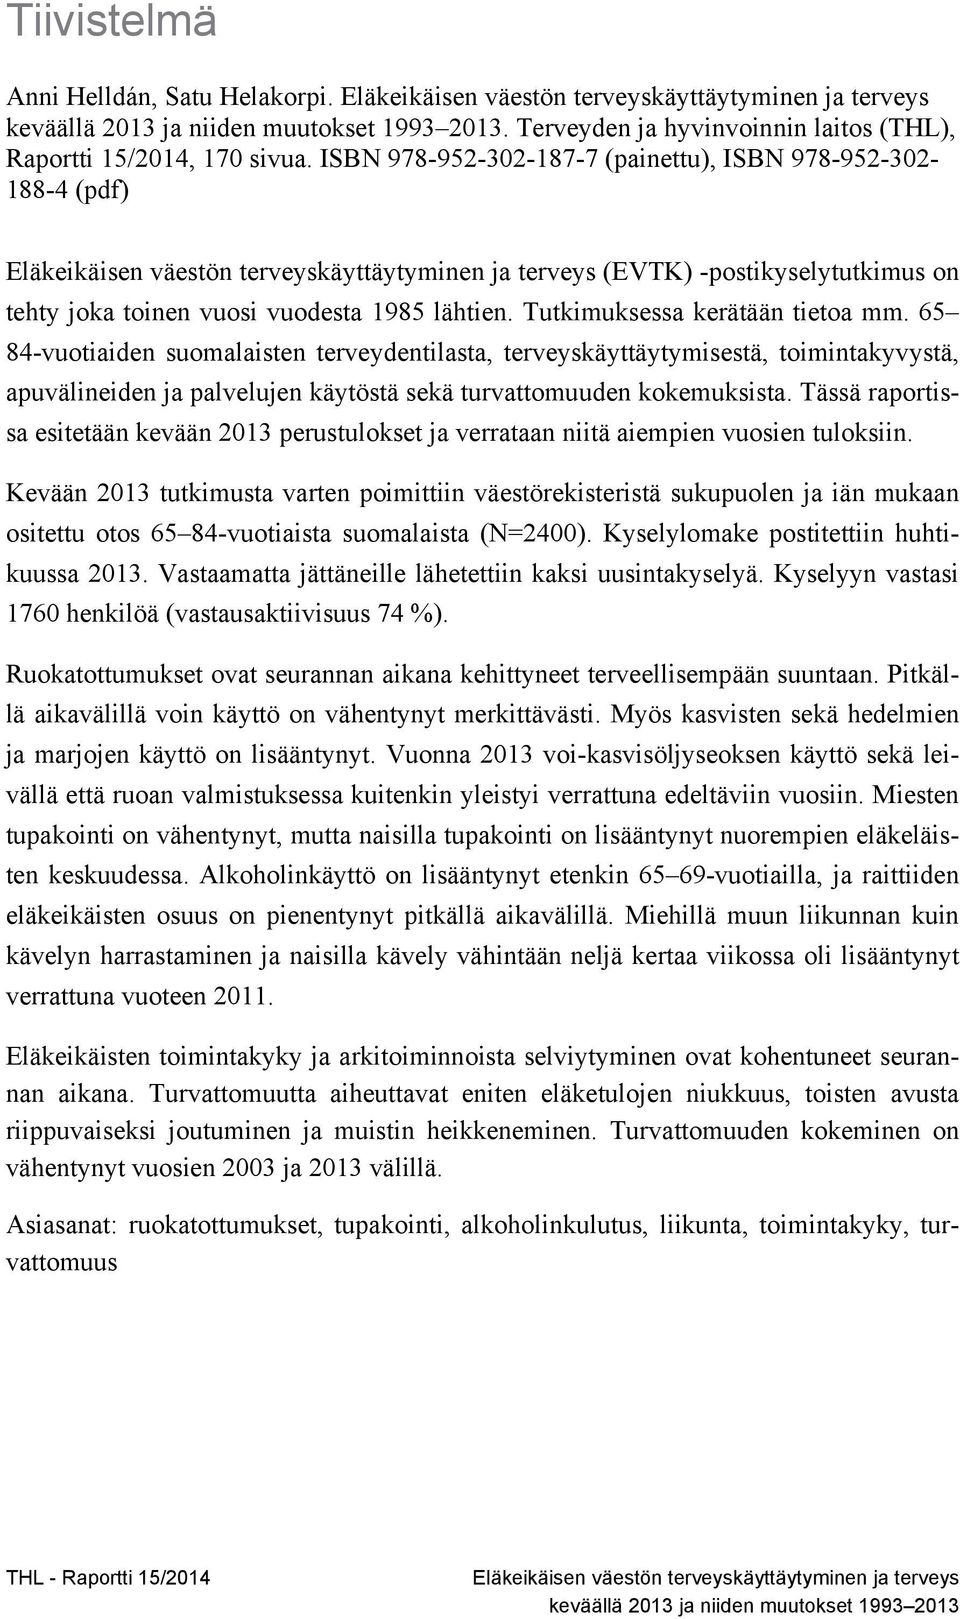 Tutkimuksessa kerätään tietoa mm. 65 84-vuotiaiden suomalaisten terveydentilasta, terveyskäyttäytymisestä, toimintakyvystä, apuvälineiden ja palvelujen käytöstä sekä turvattomuuden kokemuksista.